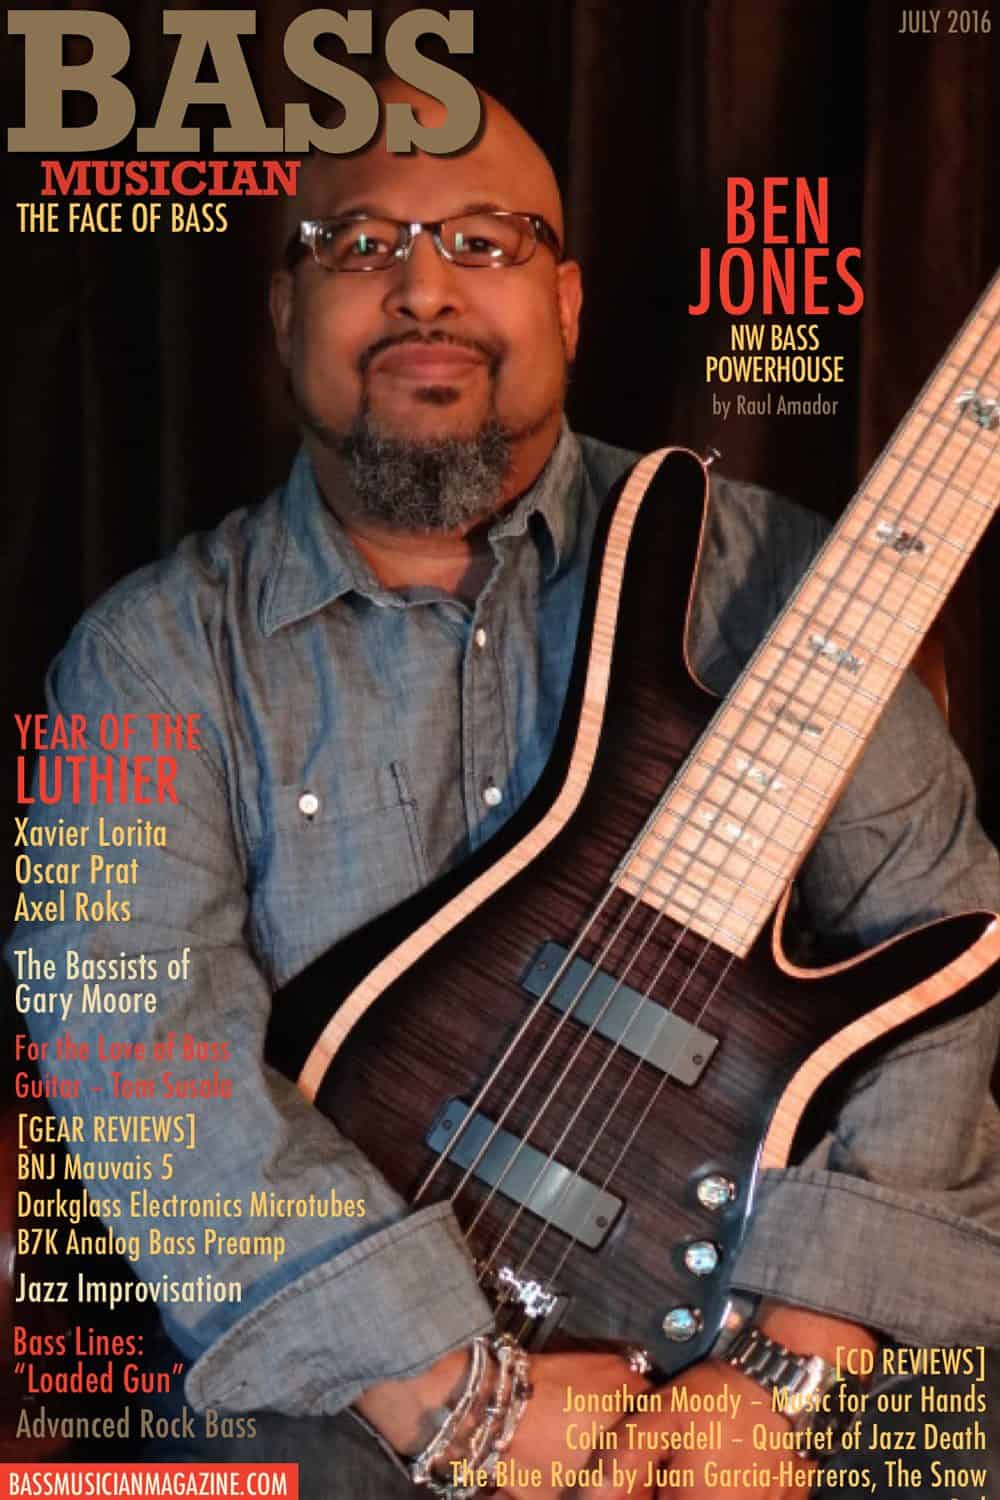 Bass Musician Magazine - Ben Jones - July 2016